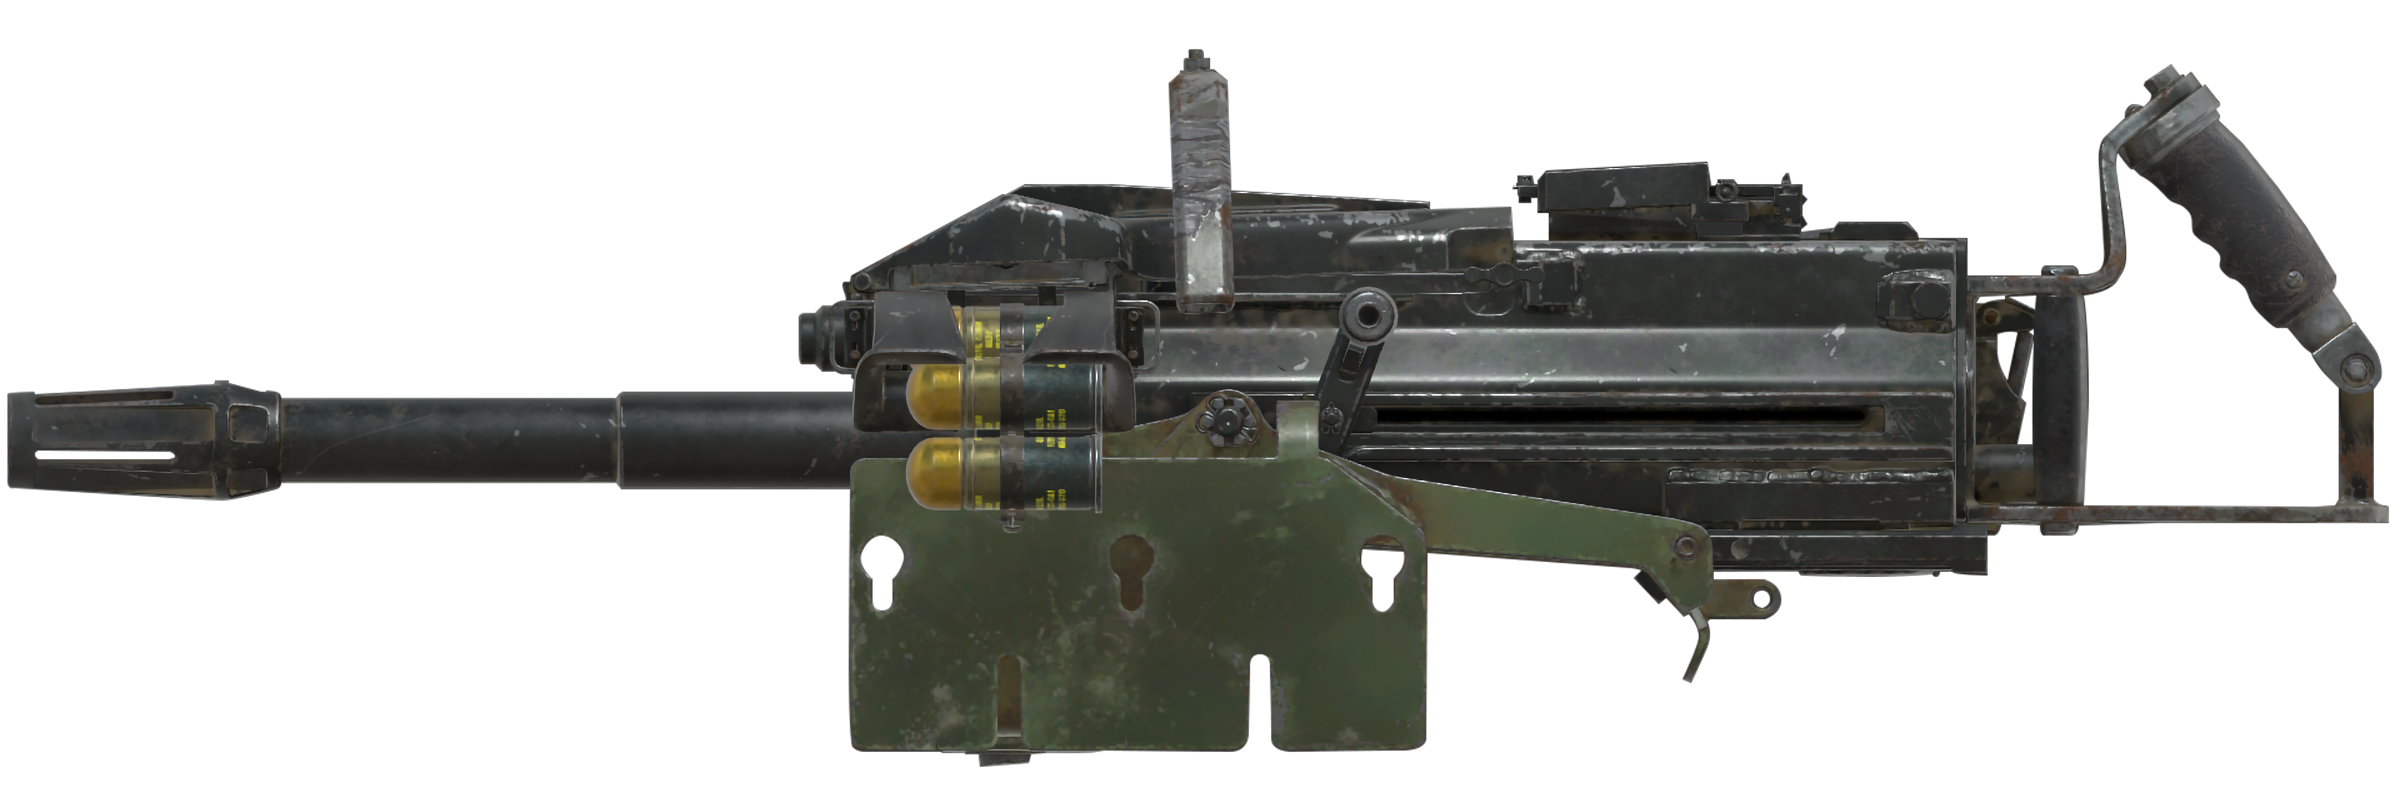 m79 pump grenade launcher